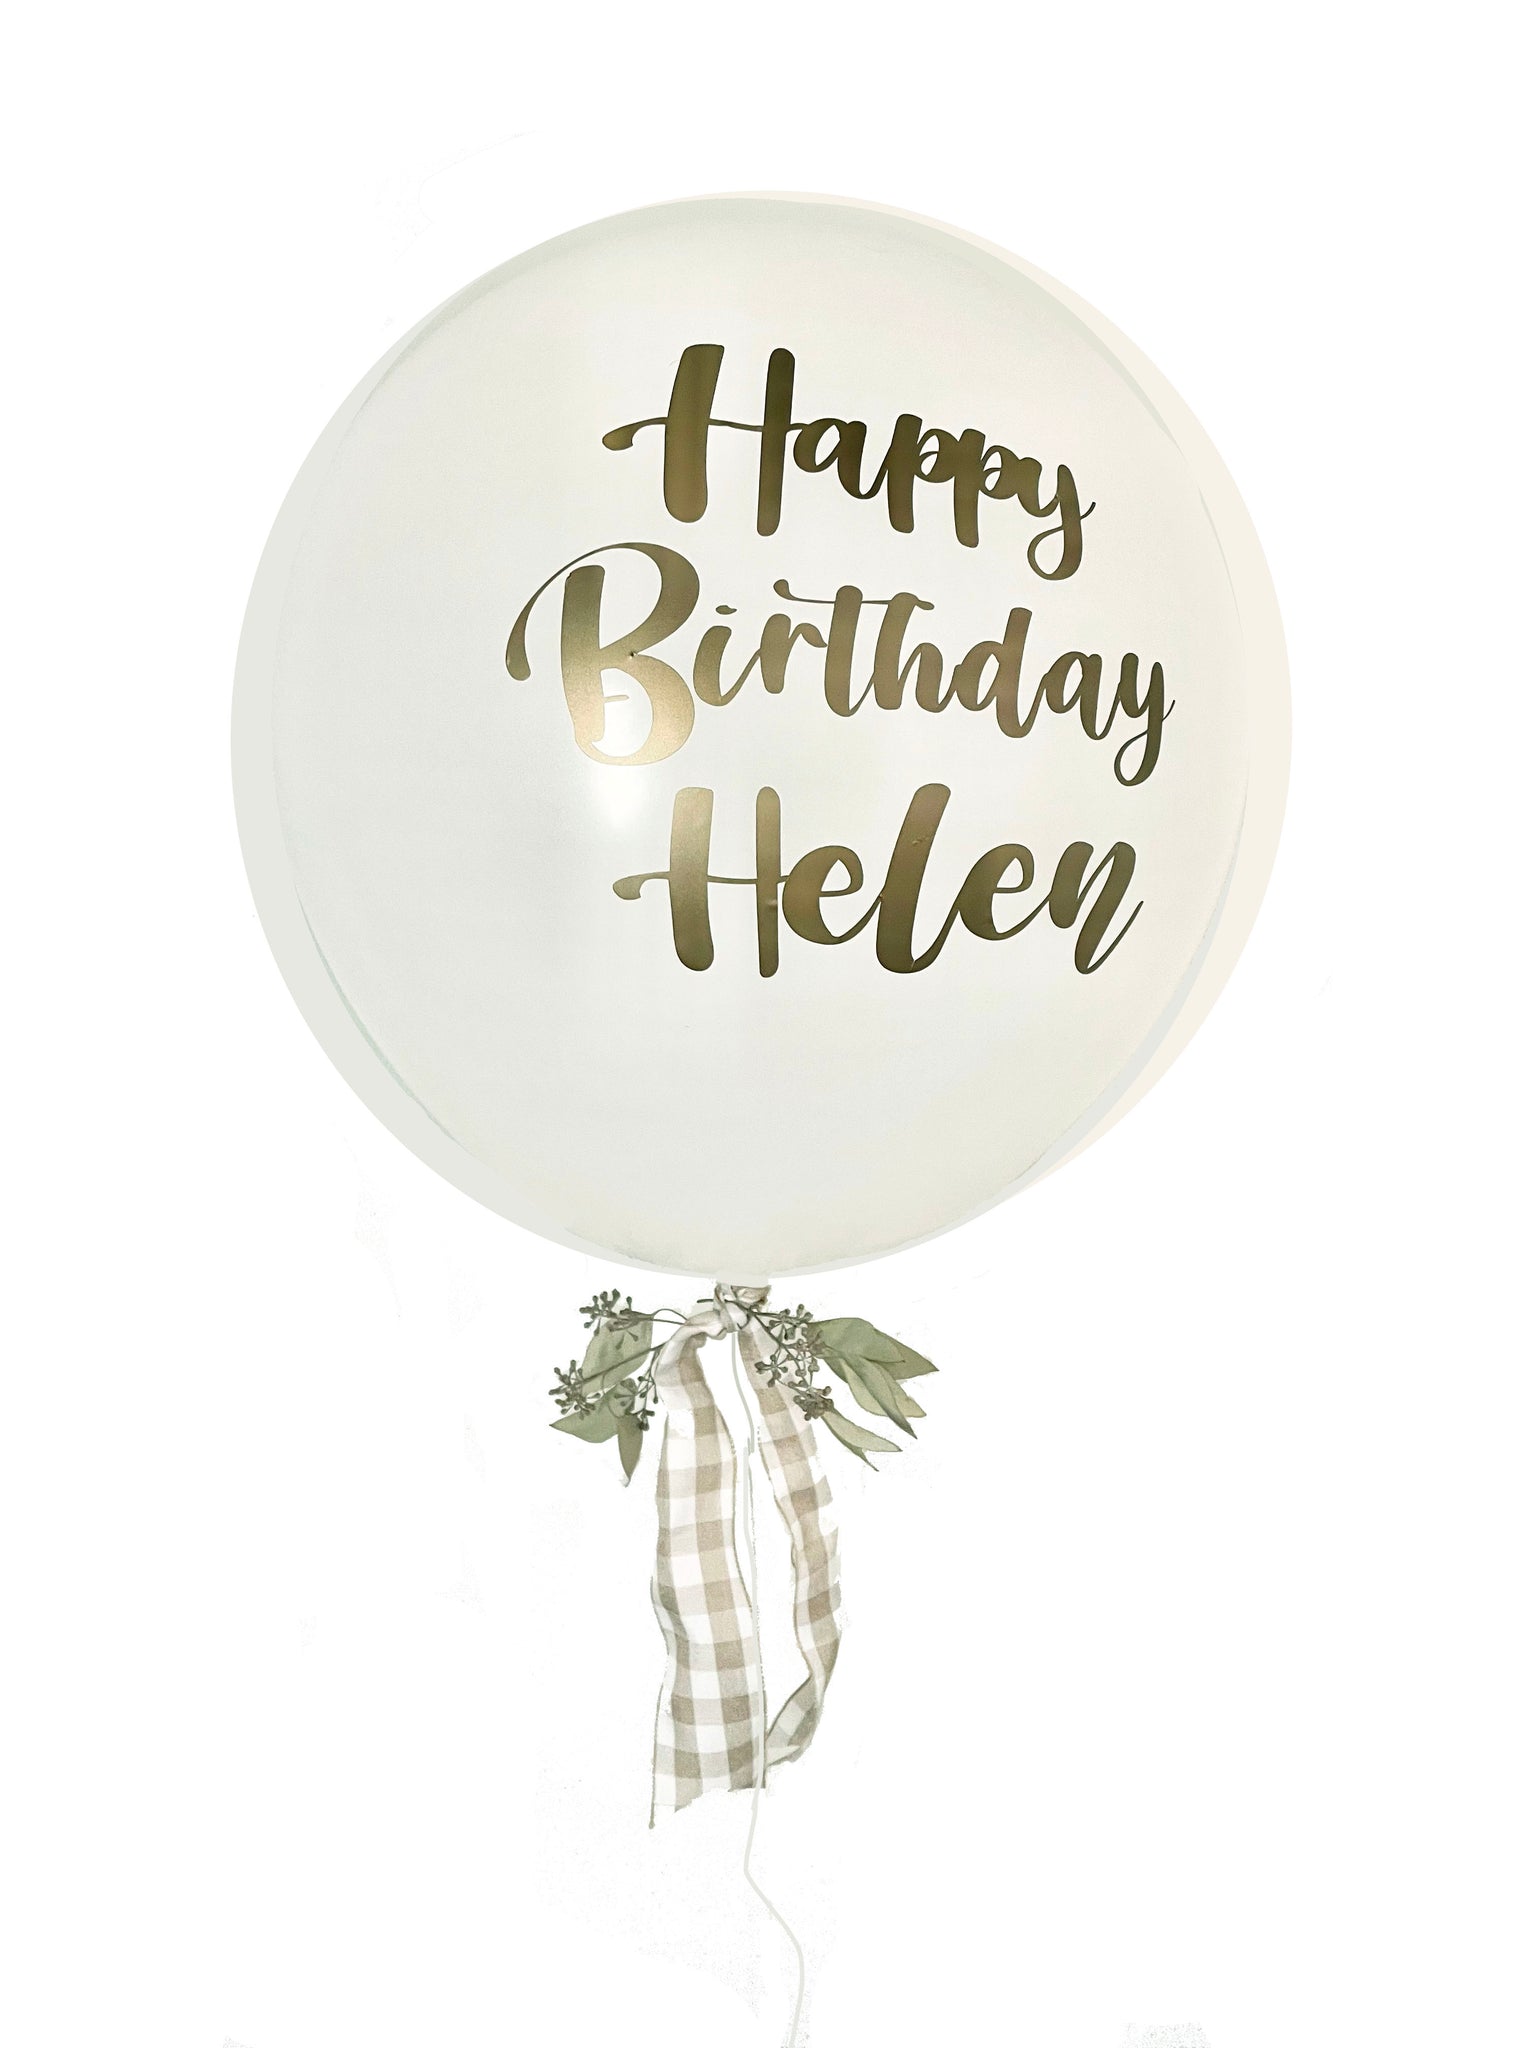 The Helen Jumbo Balloon